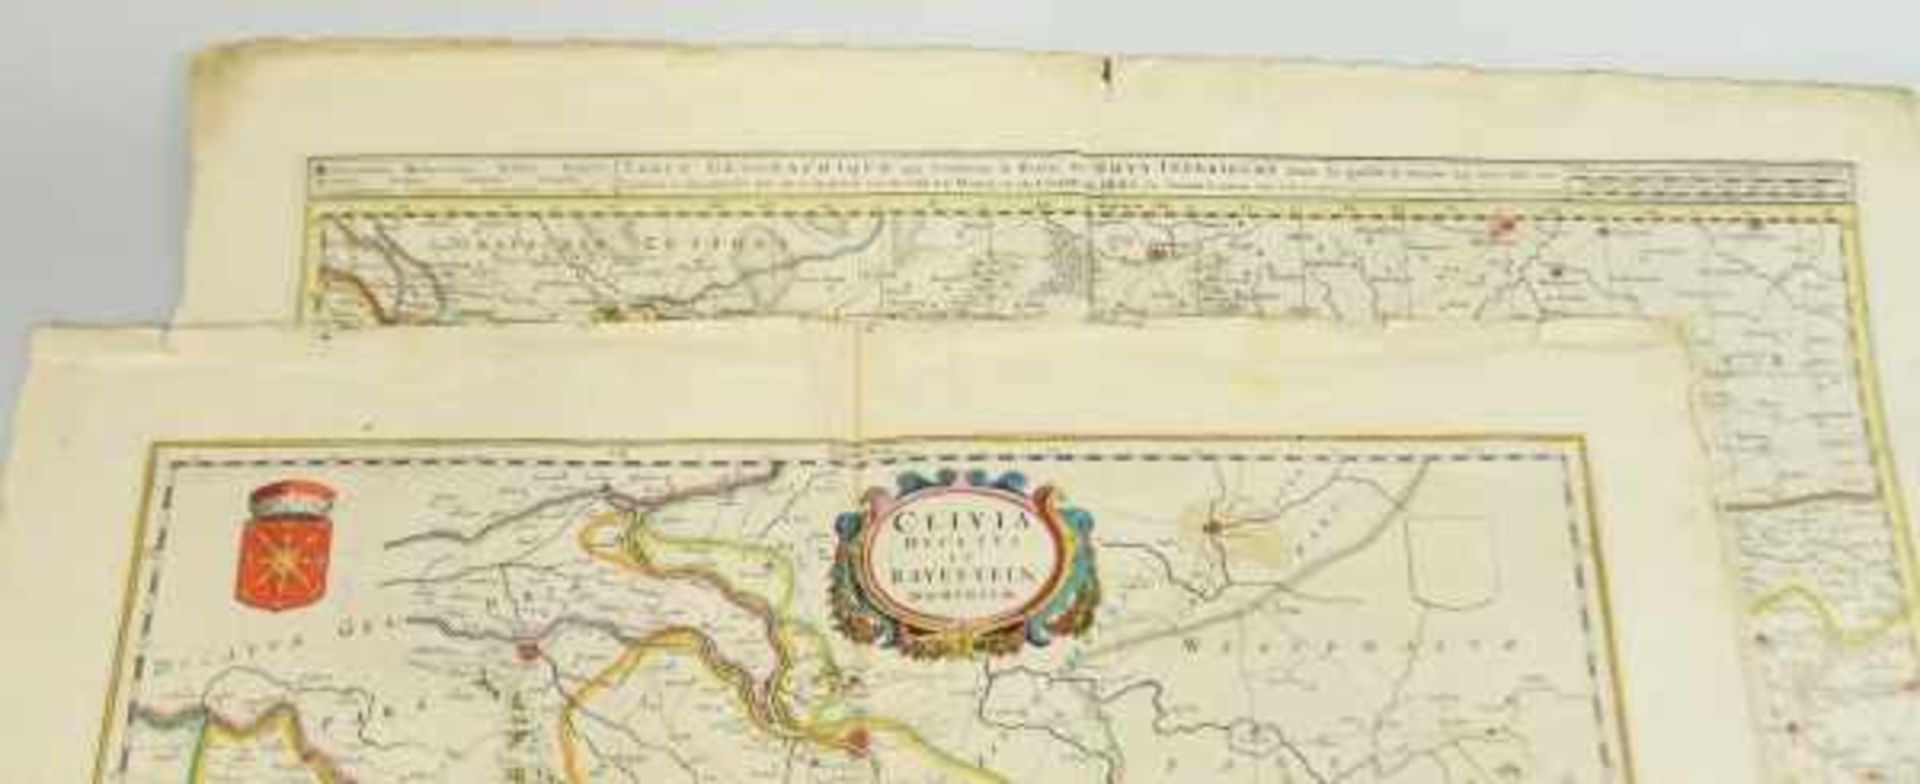 LOT VON 2 LANDKARTEN "CLIVIA DUCATUS ET RAVENSTEIN DOMINIUM", 50x60cm, "Table Geographique qui